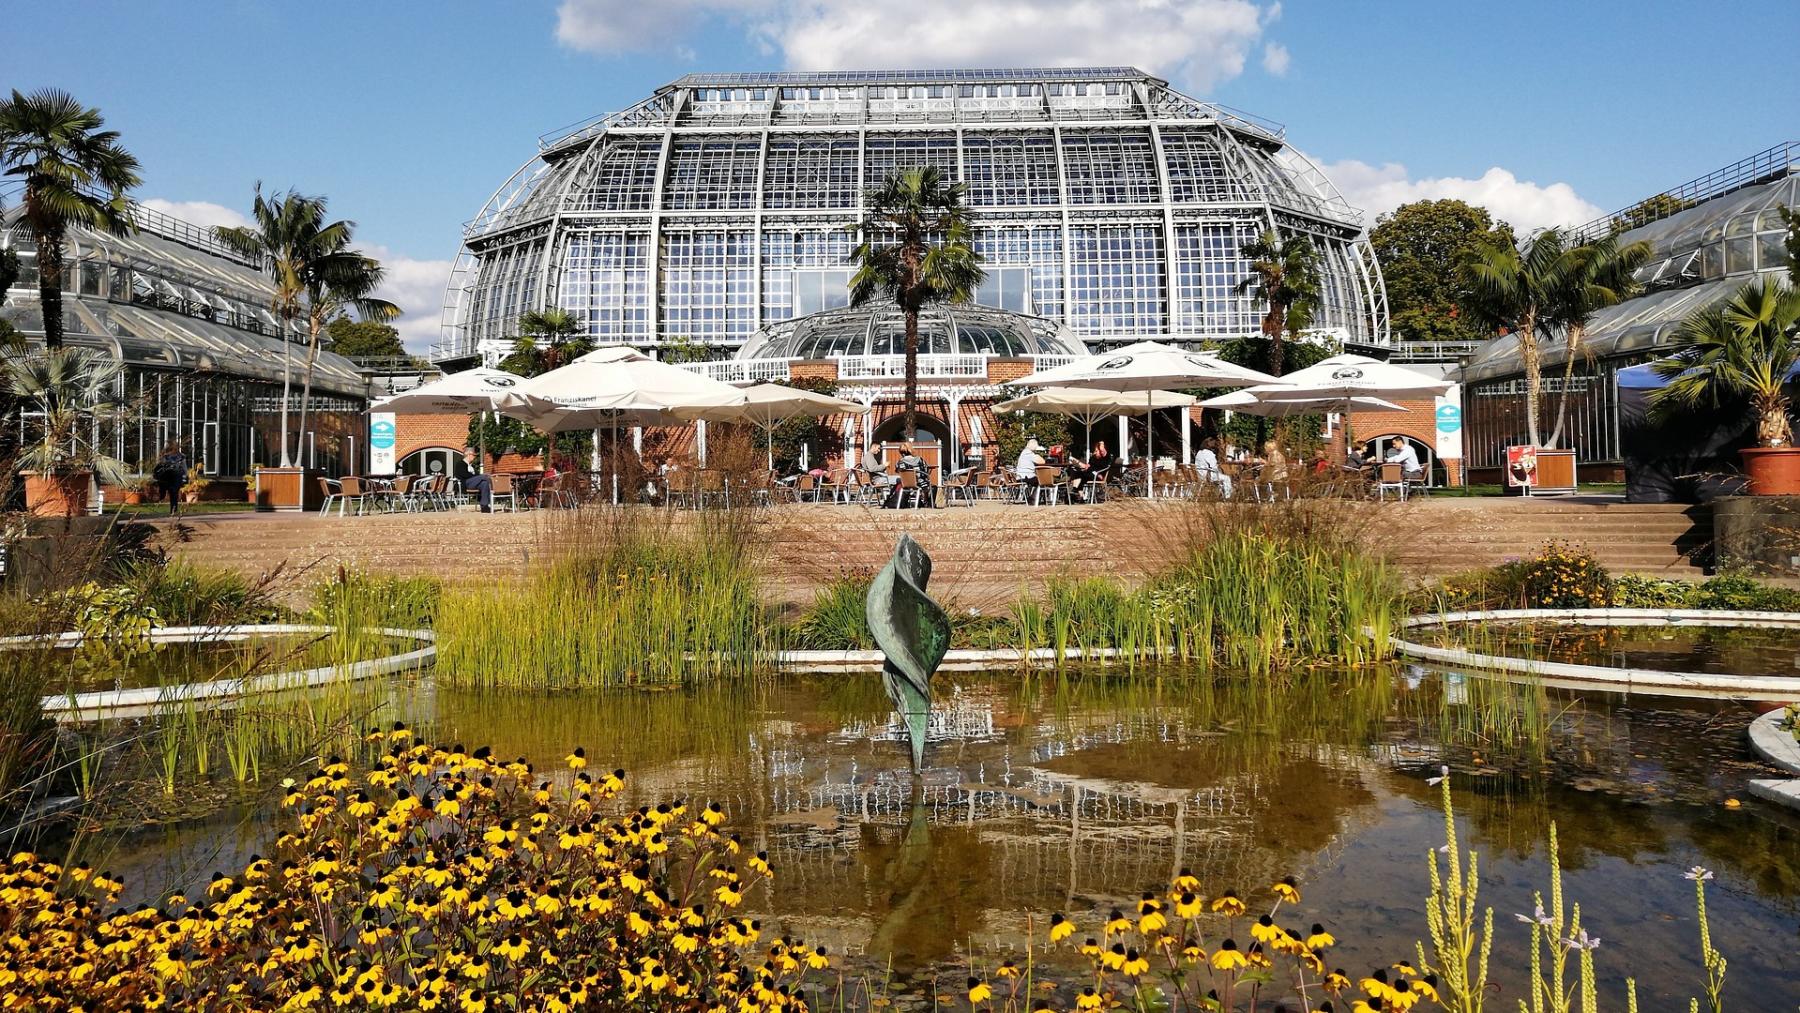 Berlin Dahlem Botanischer Garten mit Teich, Copyright: Didaktikfuchs68 auf Pixabay